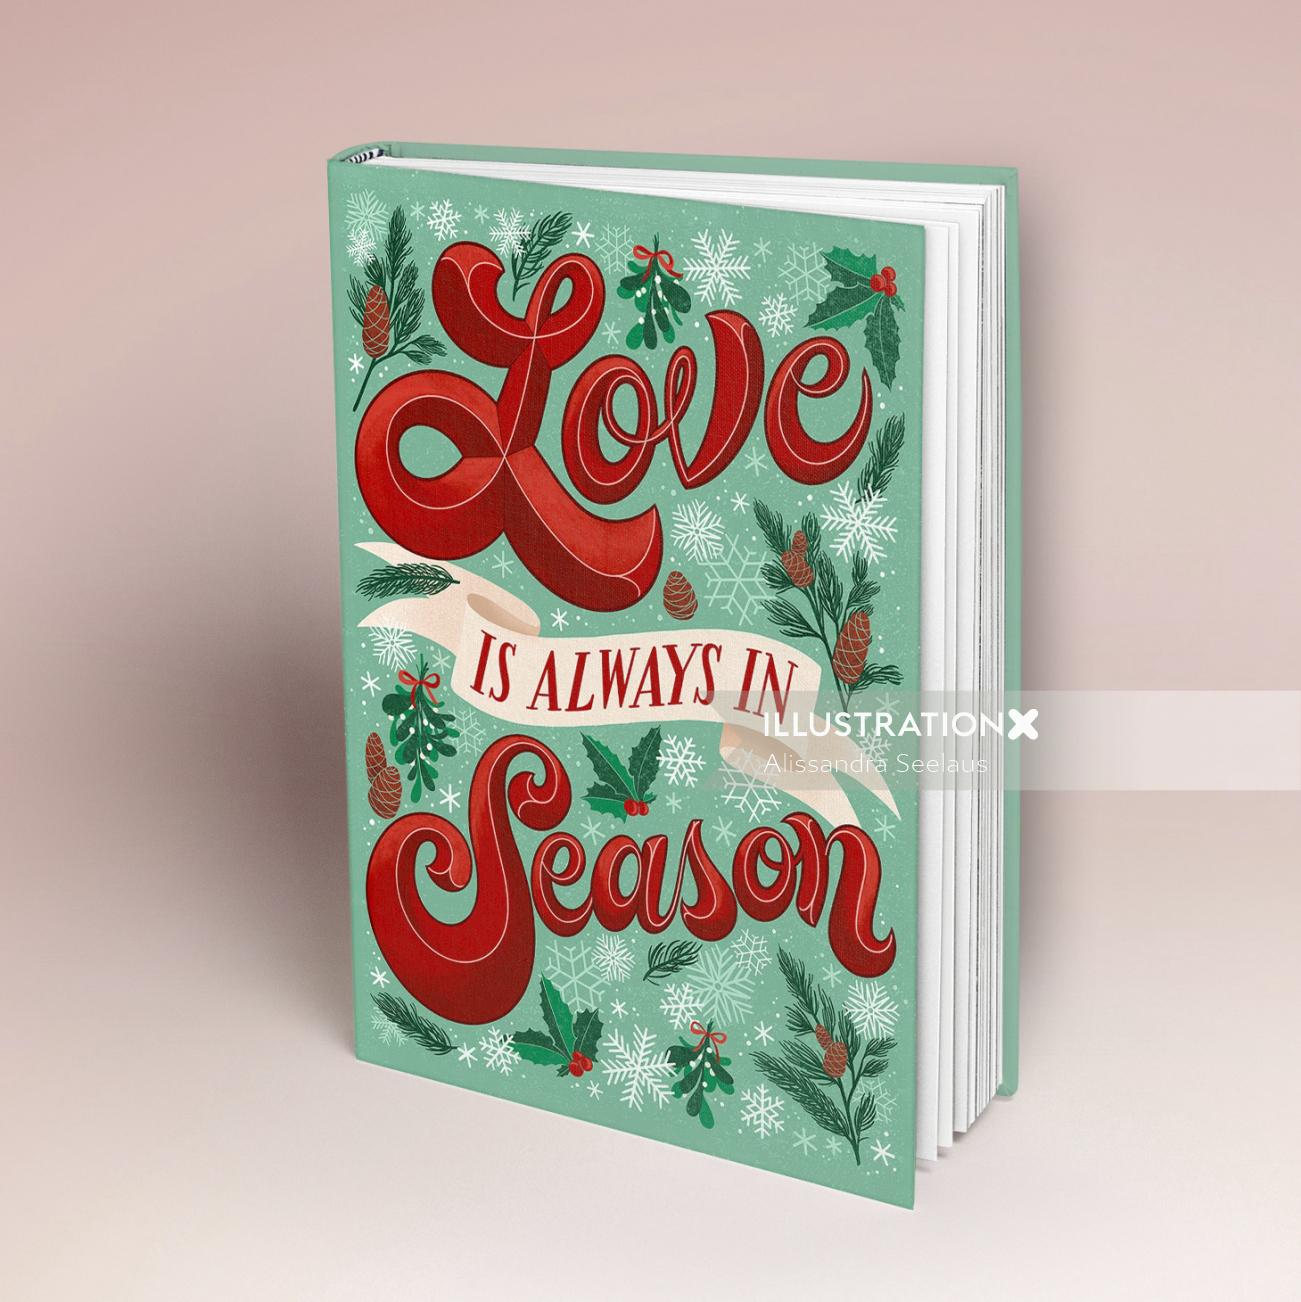 为《爱总是在季节》这本书制作封面